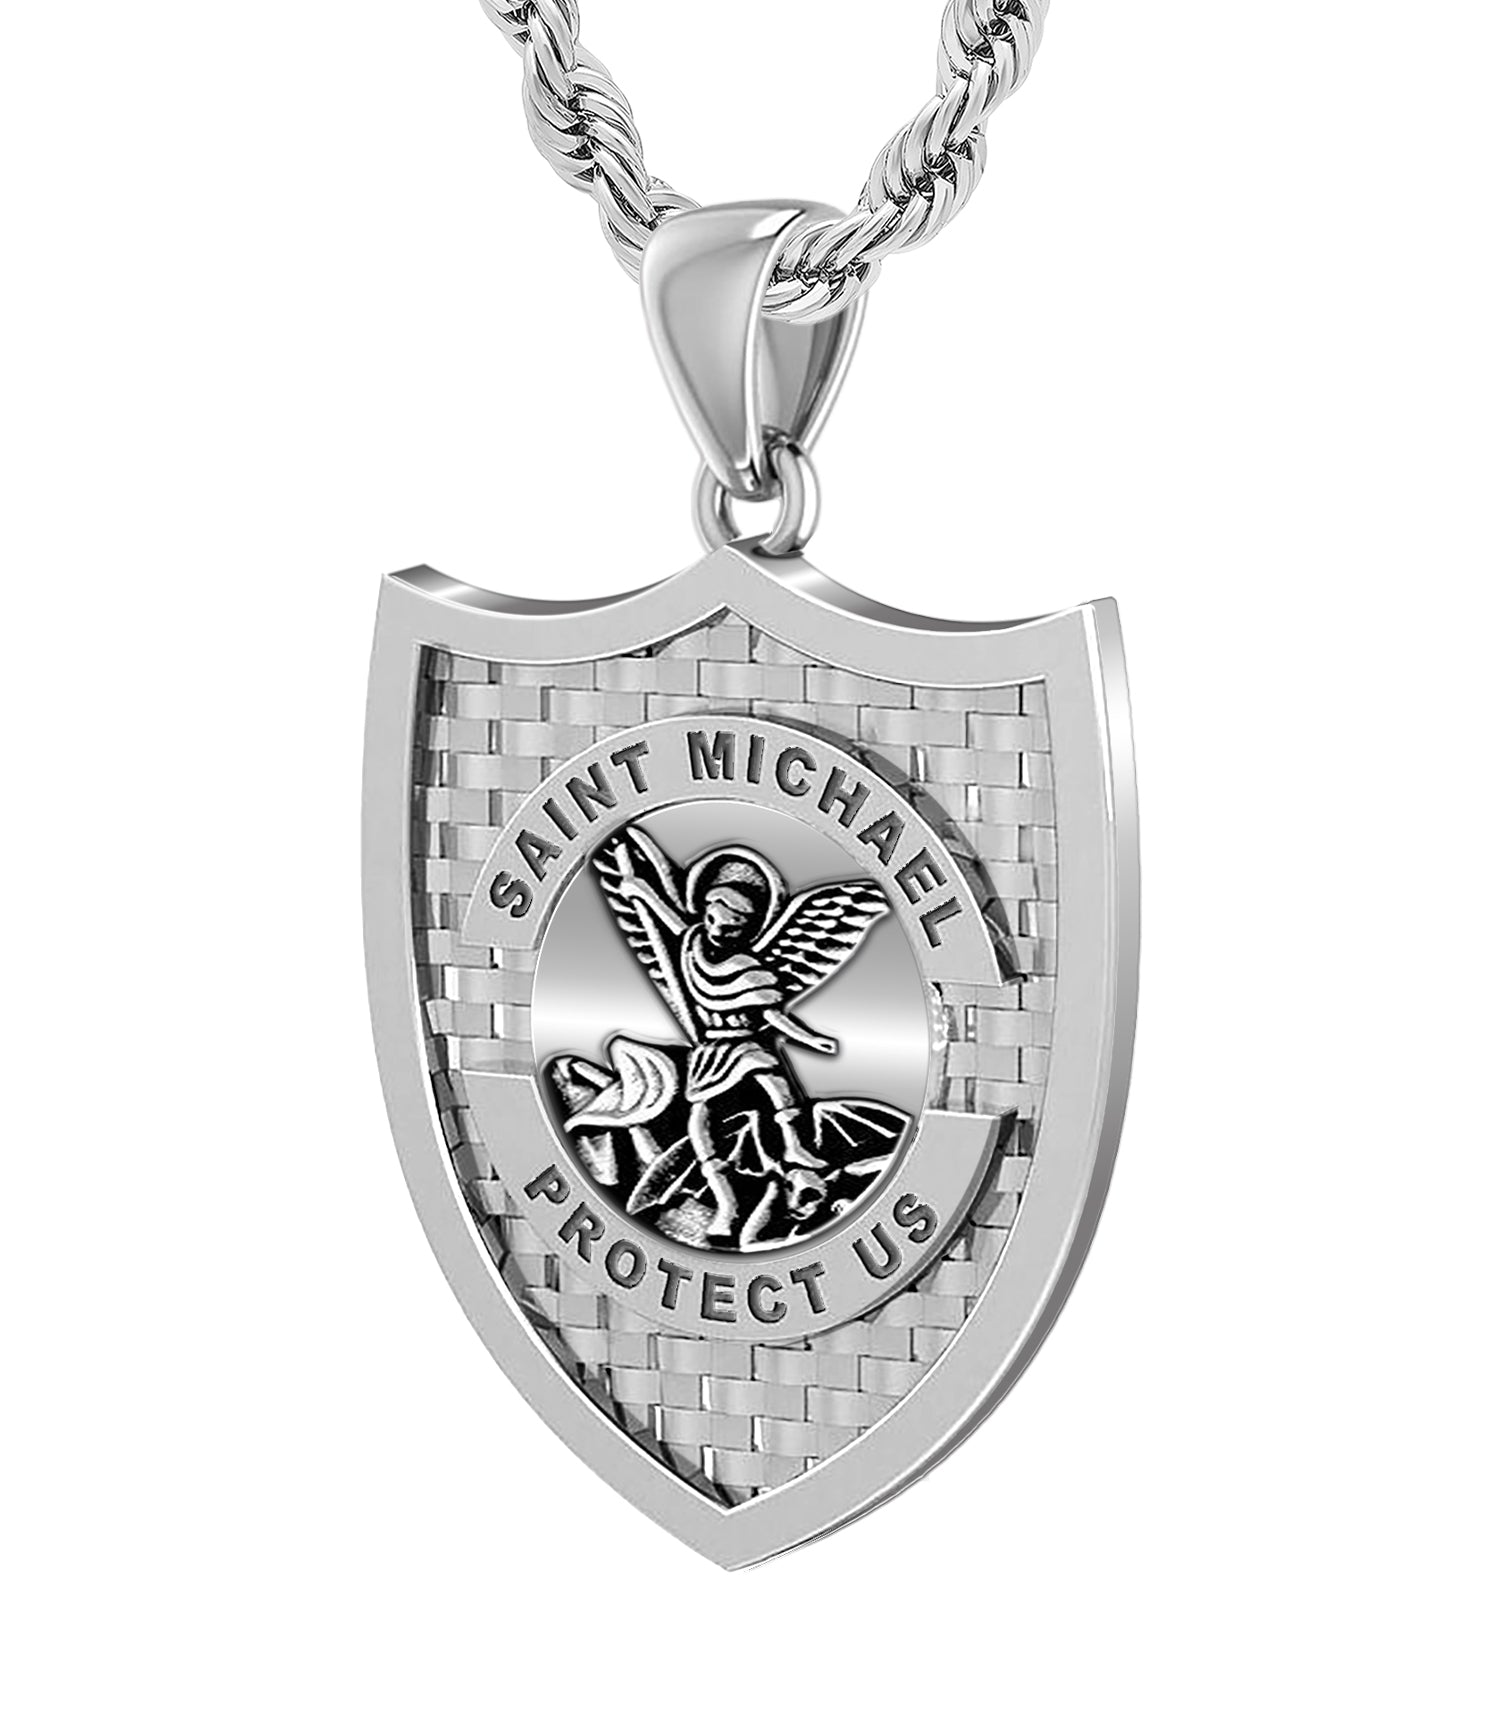 LONAGO Saint Michael Medal Necklace Sterling Silver Archangel St Michael  Medallion Pendant Necklaces Gift for Men | Amazon.com